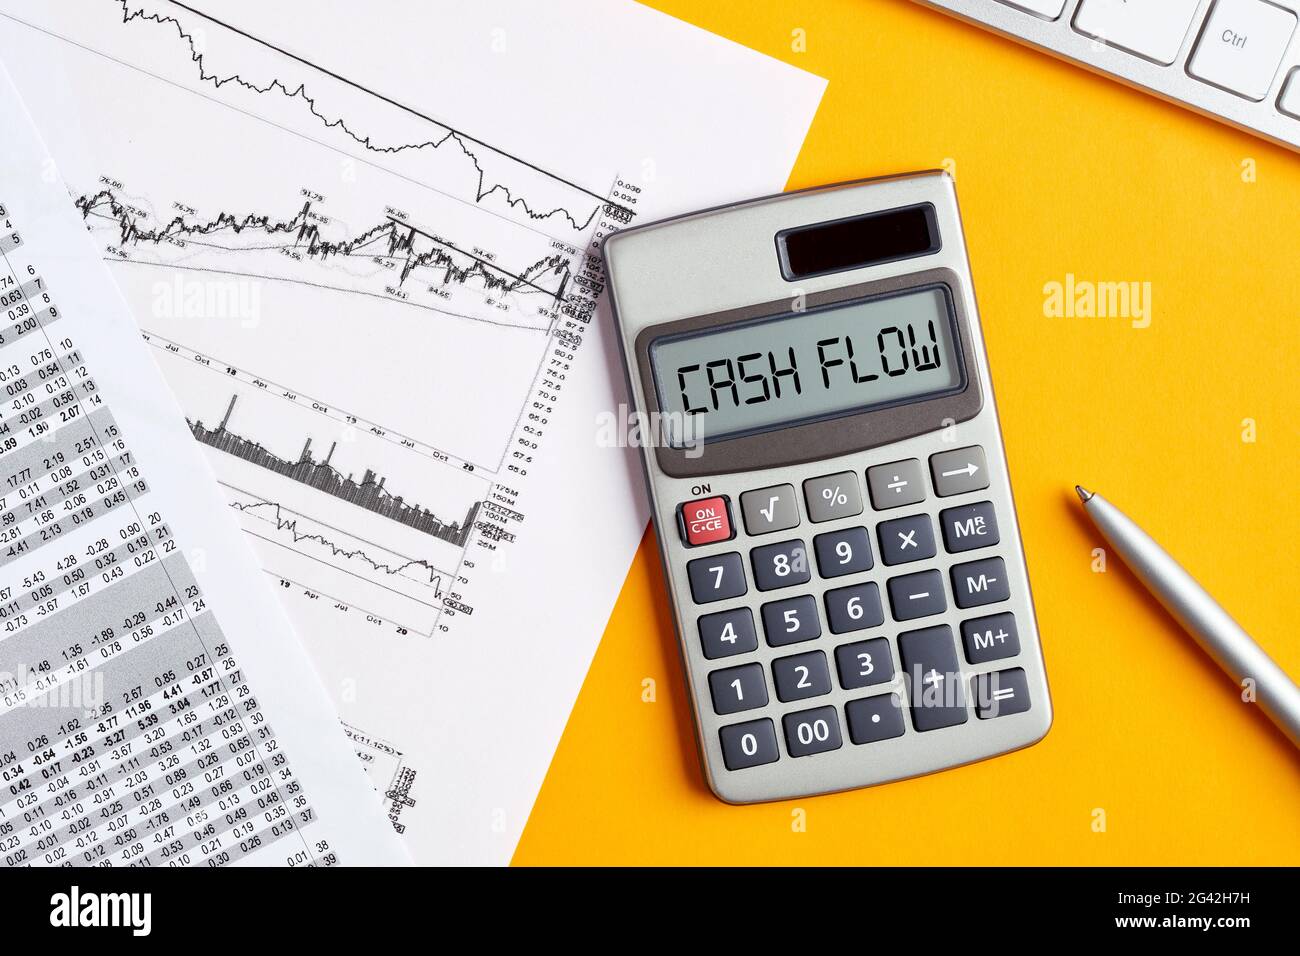 Das Wort Cashflow auf dem Bildschirm des Rechners mit dem Desktop des Geschäftsbüros. Zur Berechnung oder Analyse des finanziellen Cashflow-Konzepts. Stockfoto